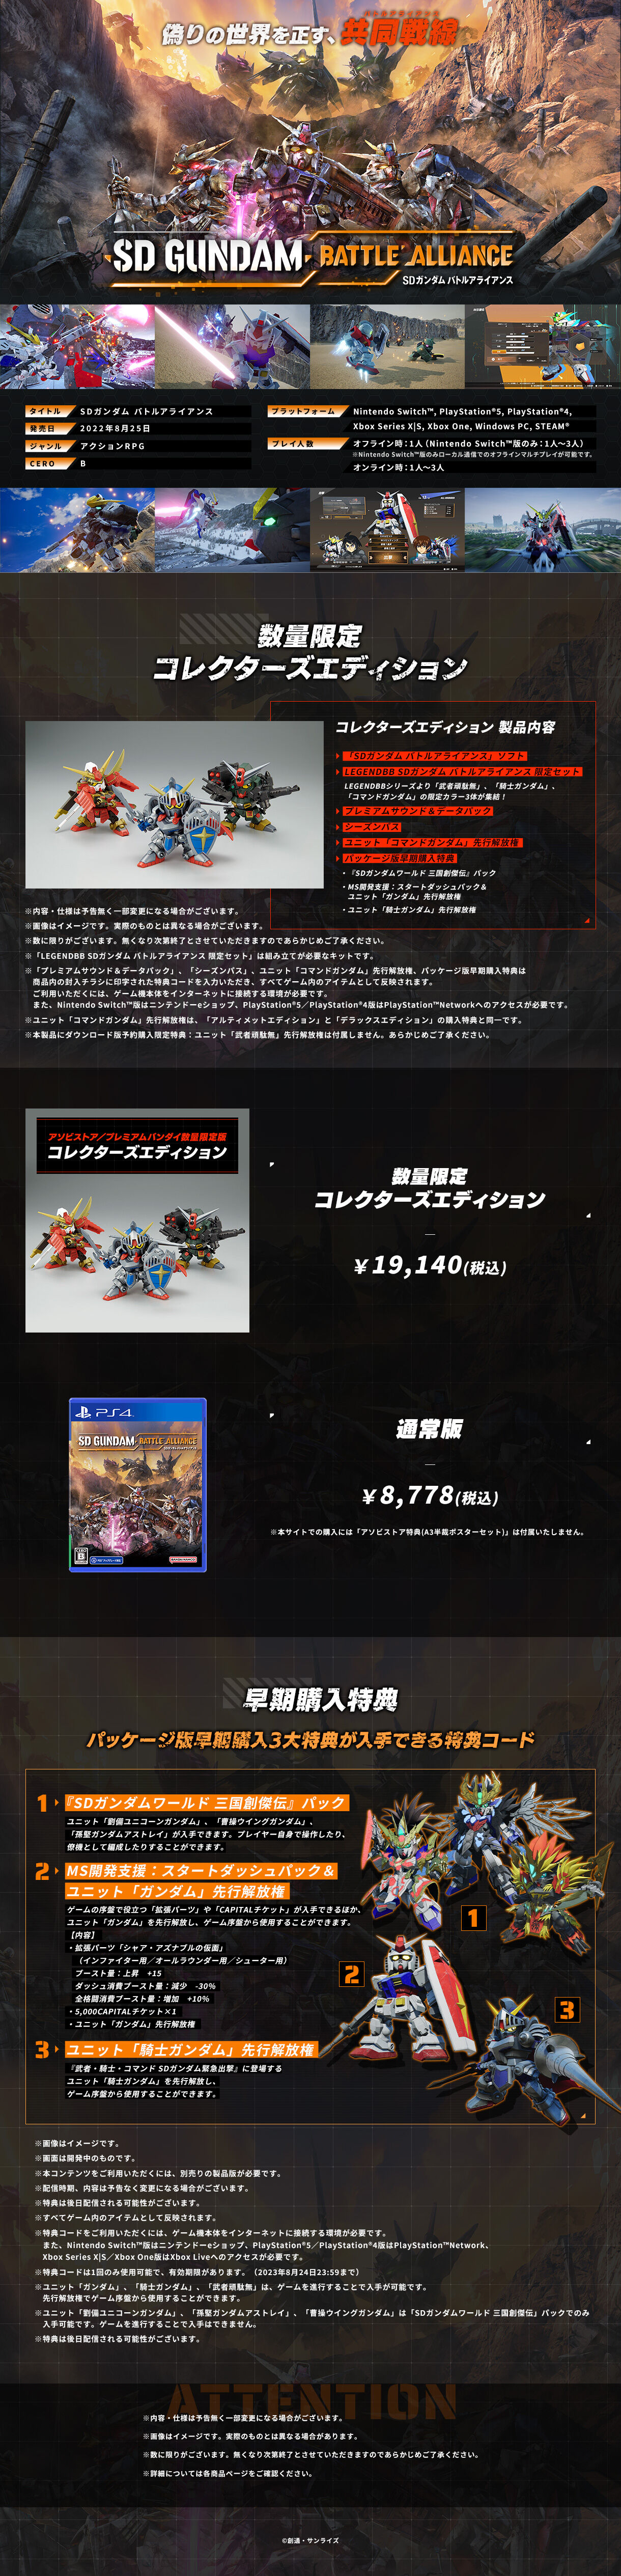 PS4版「SDガンダム バトルアライアンス コレクターズエディション」-